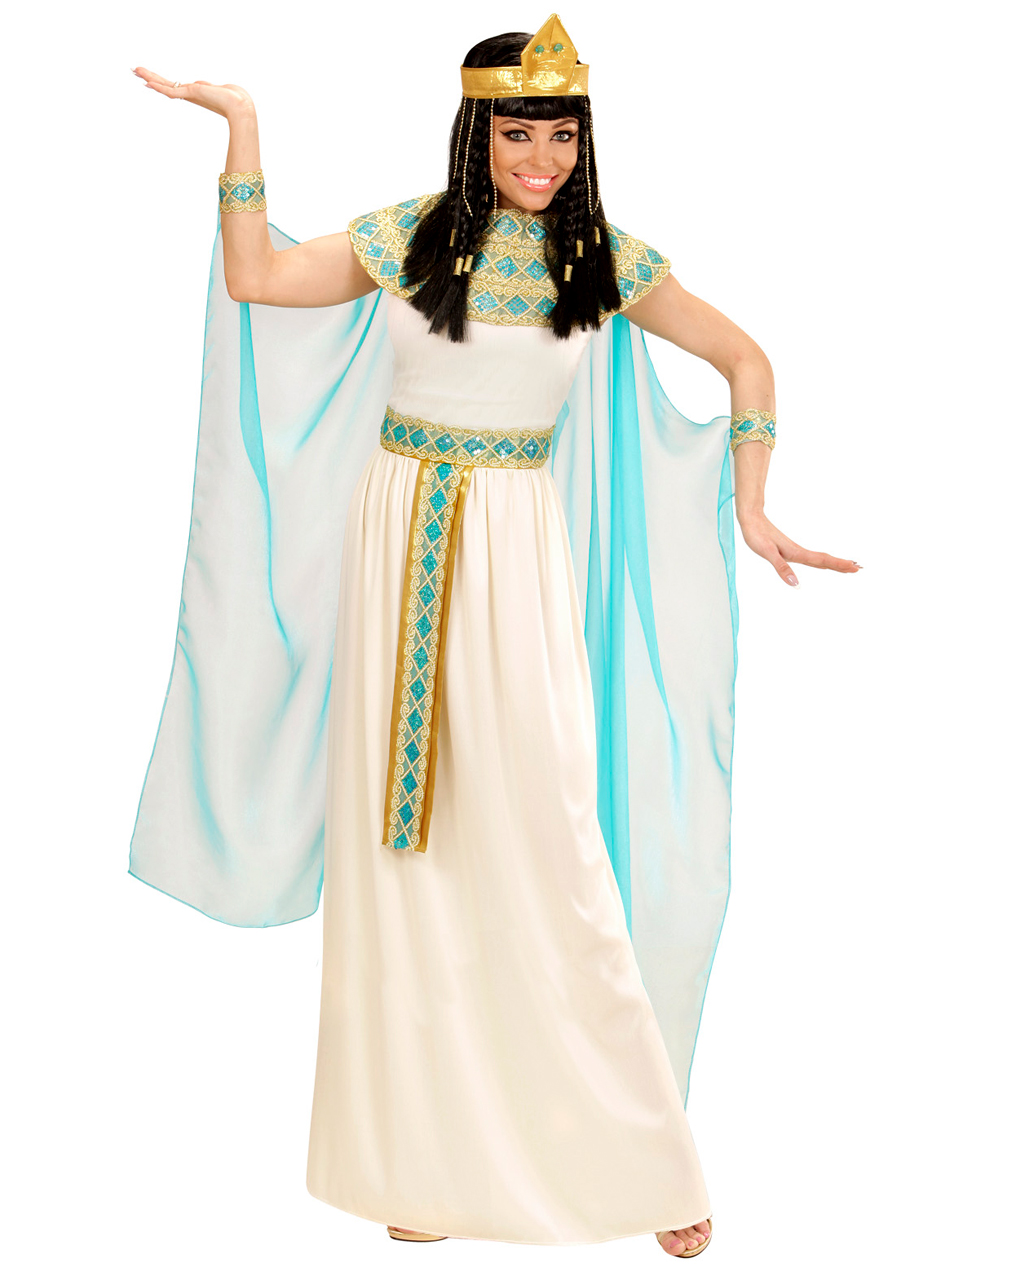 4 Tlg Cleopatra Kostüm Deluxe Für Fasching Karneval Universe